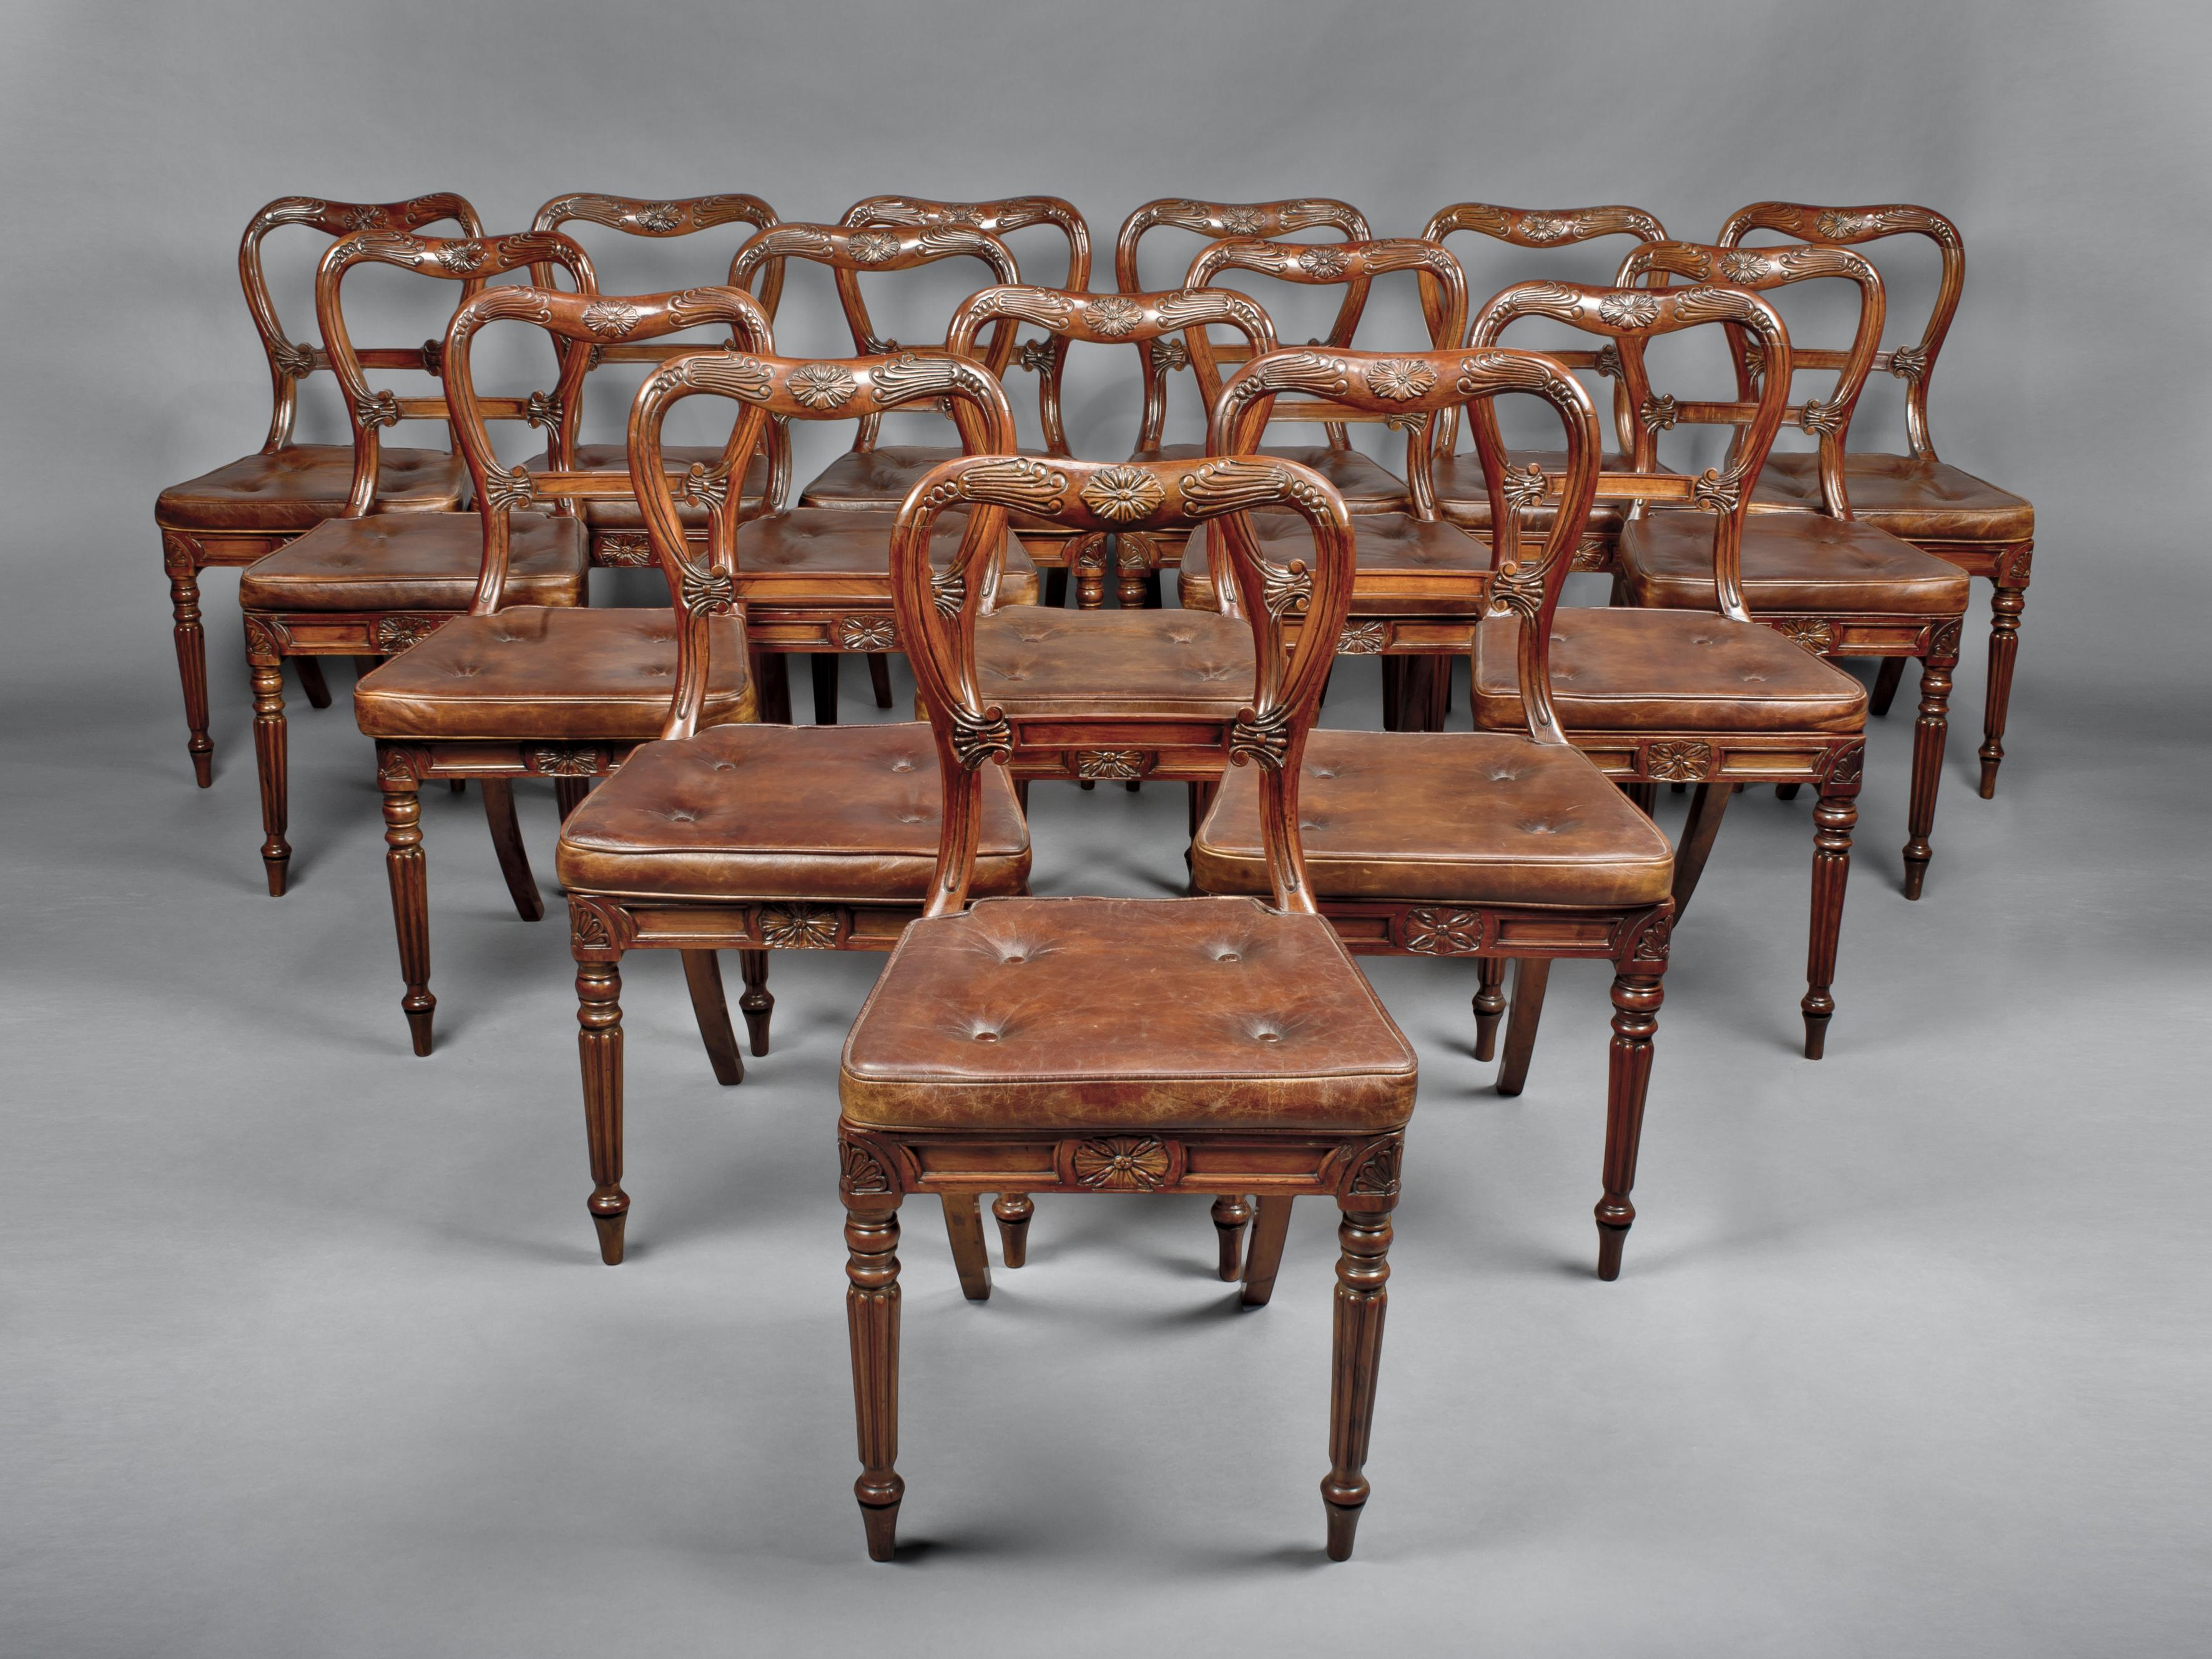 Un ensemble de dix-huit chaises de salle à manger en noyer rouge attribuées à Gillows. 

Origine britannique, vers 1830.

Chaque chaise présente un dossier ballon à pansement, avec un feuillage incisé et un panneau horizontal, au-dessus d'une